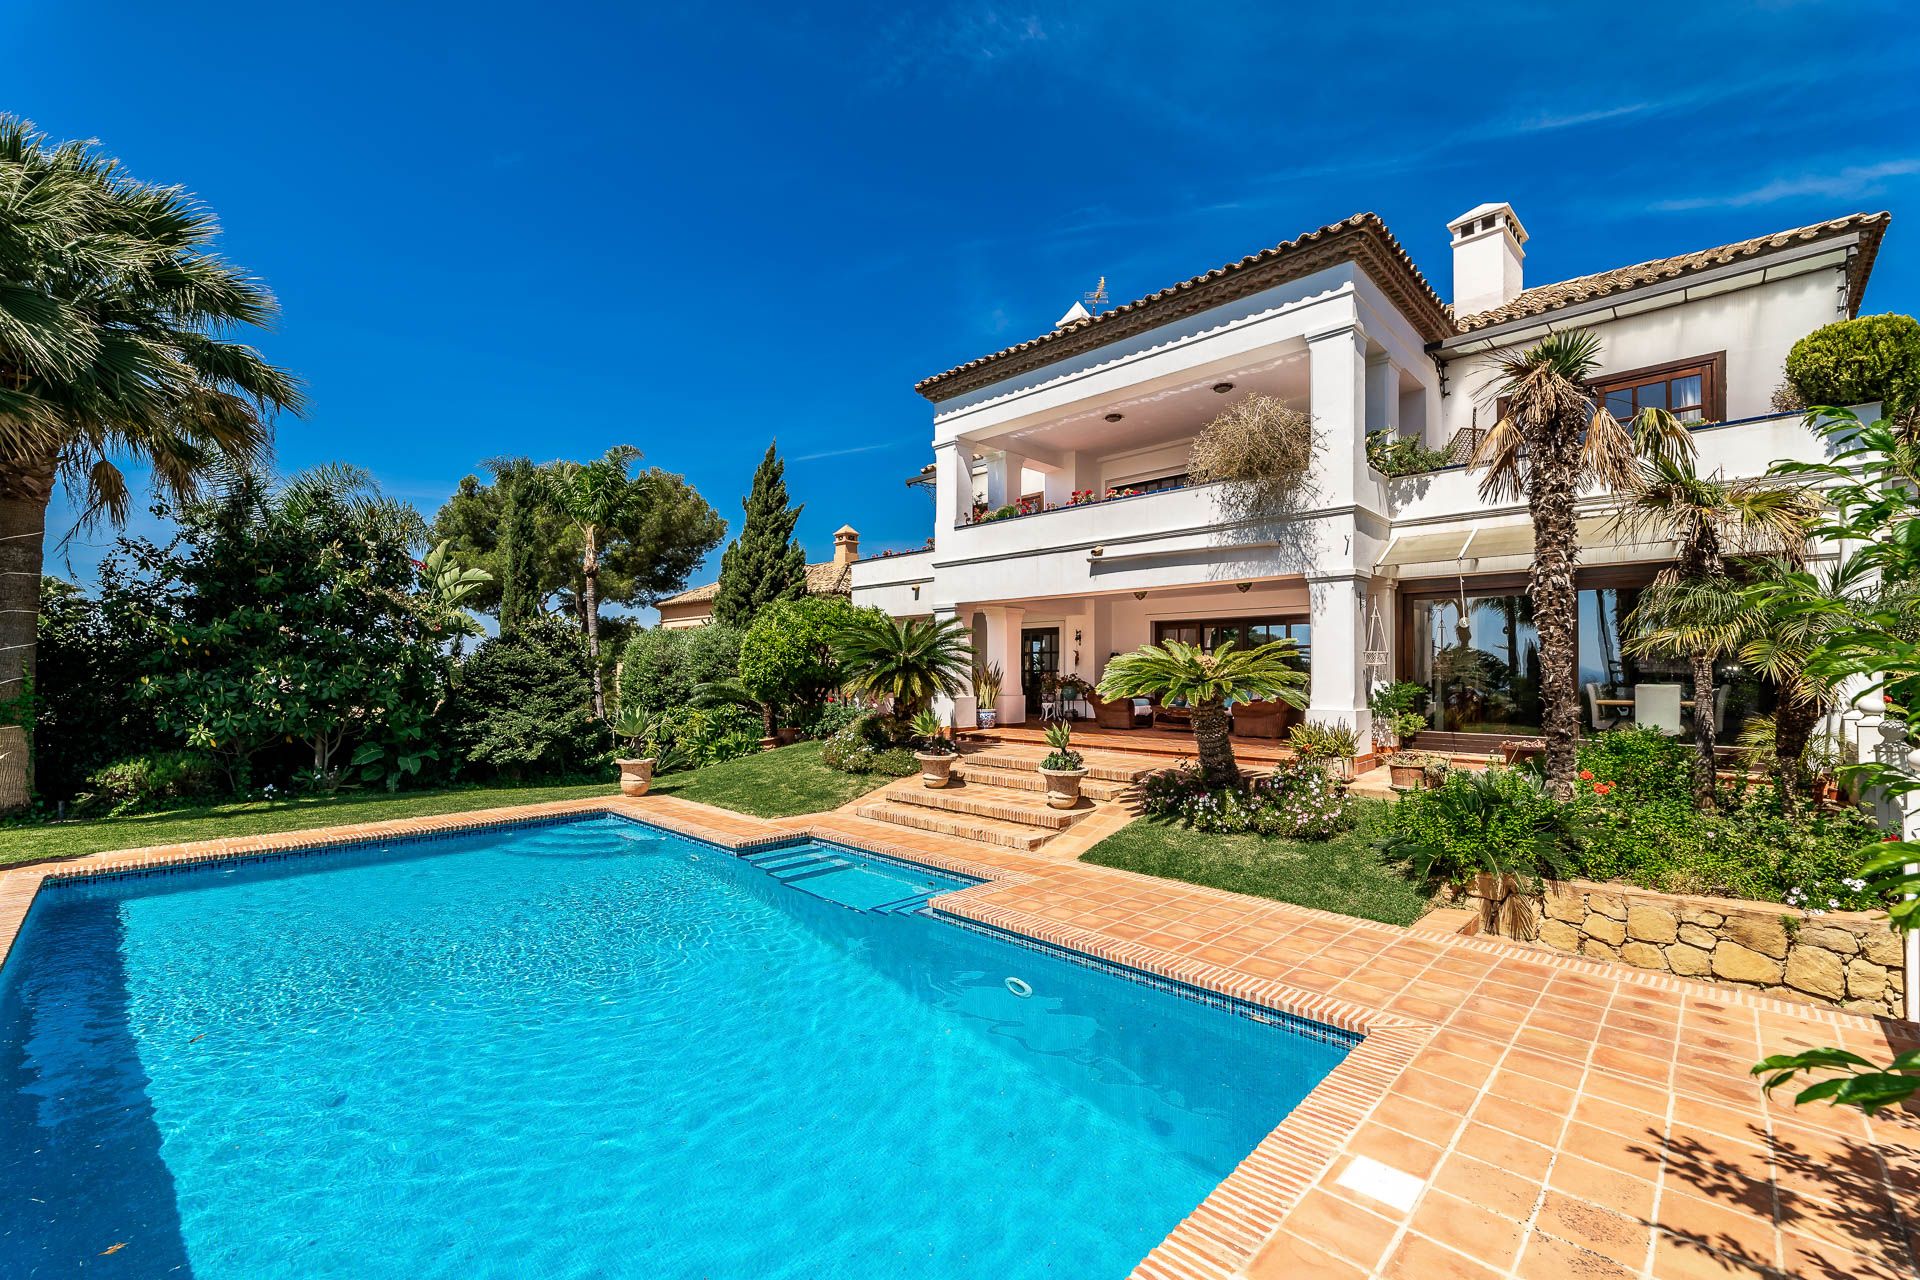 Villa with breathtaking views in Altos Reales | Engel & Völkers Marbella